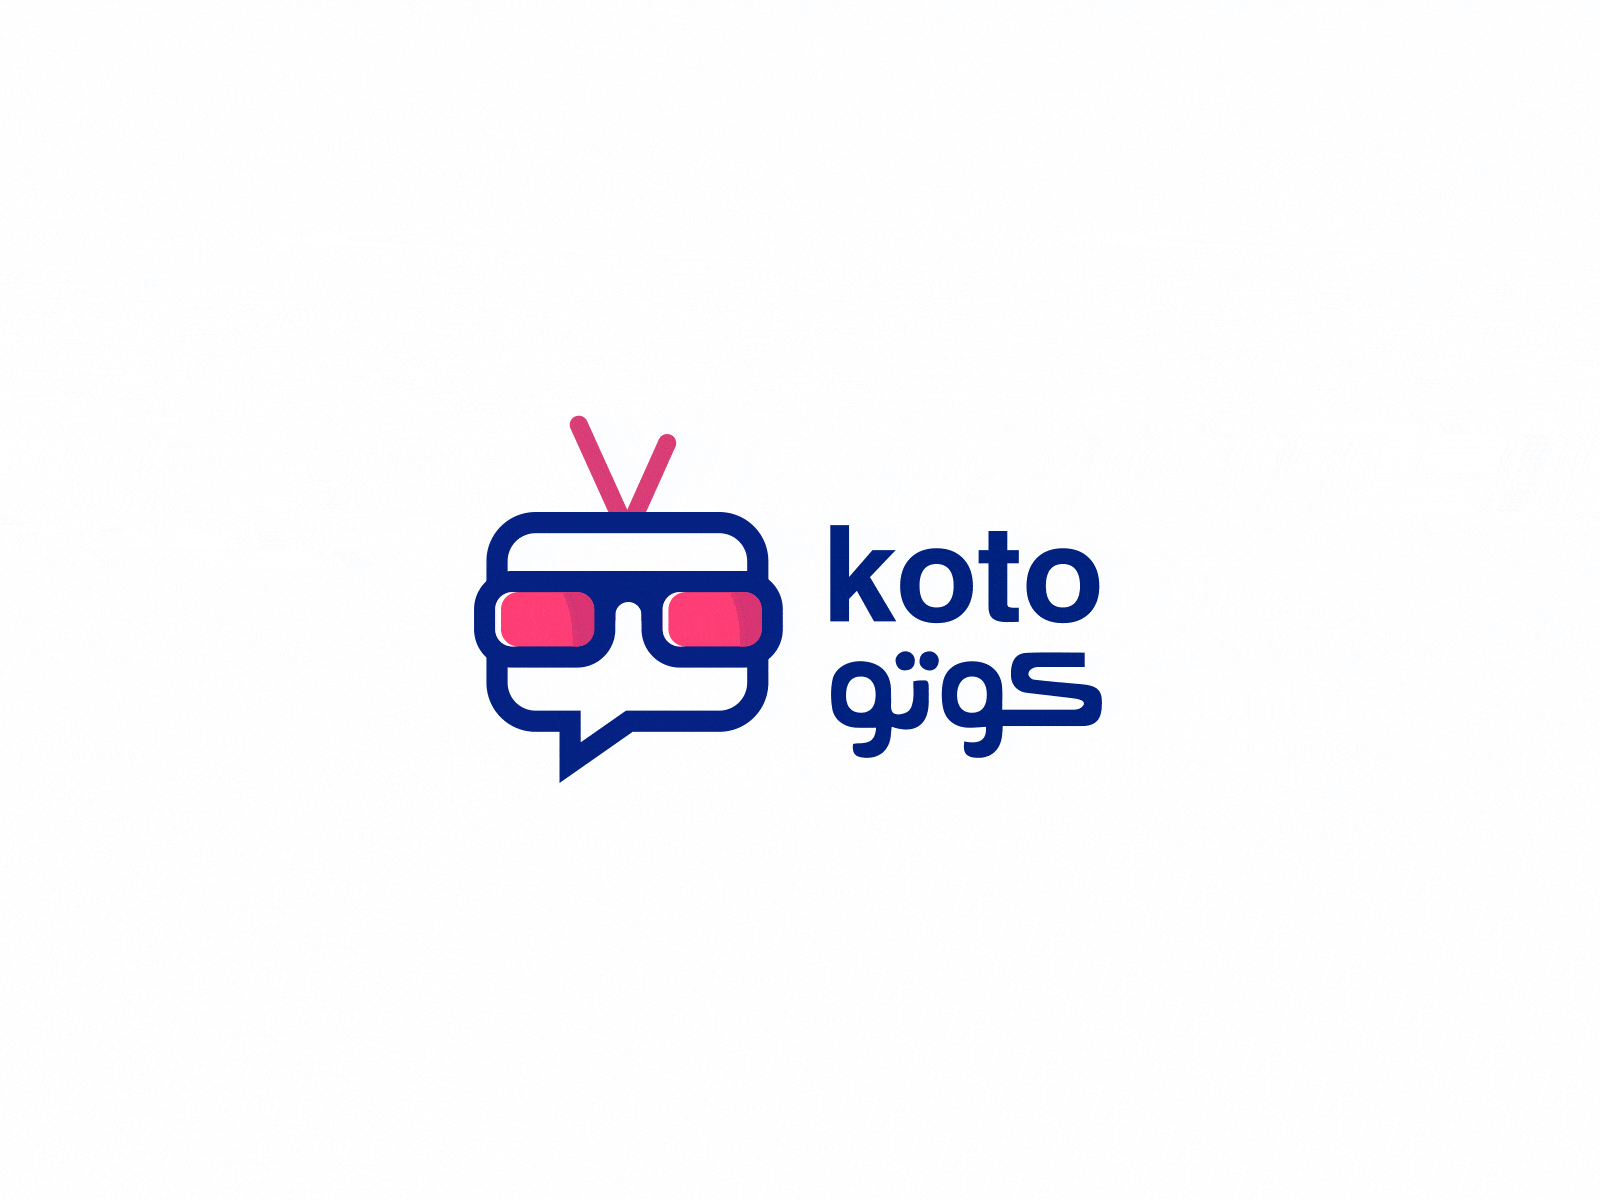 Koto Logo Animation animation logo logo animation motion graphics